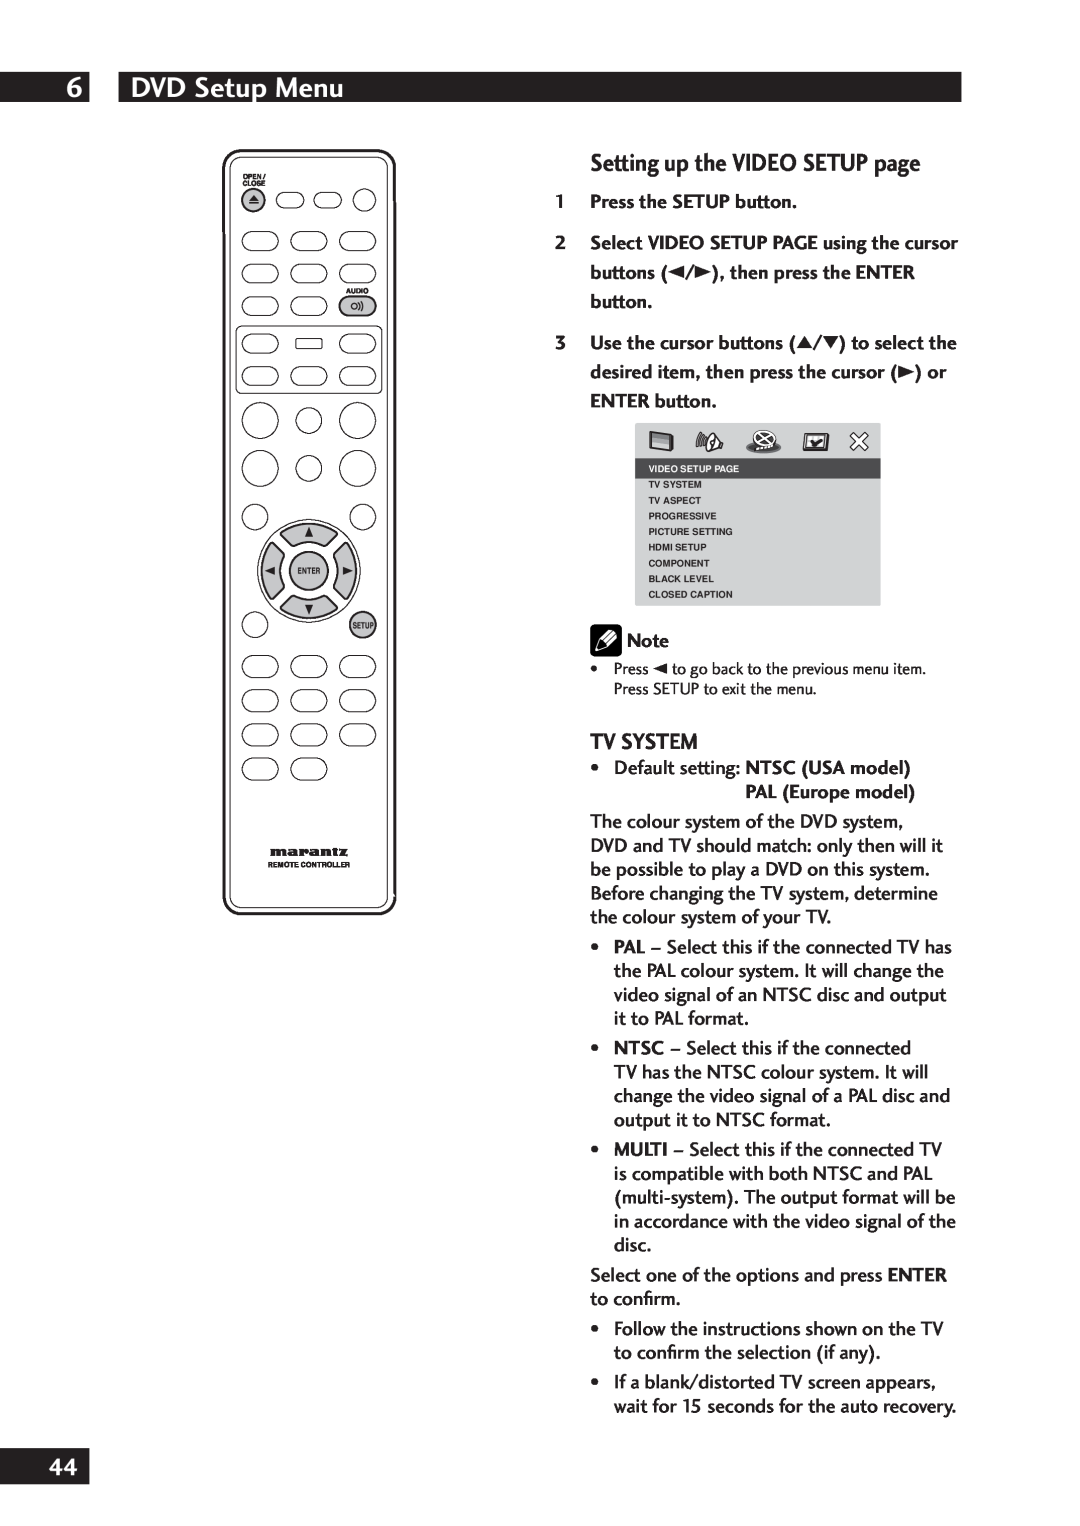 Marantz DV7001 manual Setting up the VIDEO SETUP page, Tv System, PAL Europe model, DVD Setup Menu, 1Press the SETUP button 